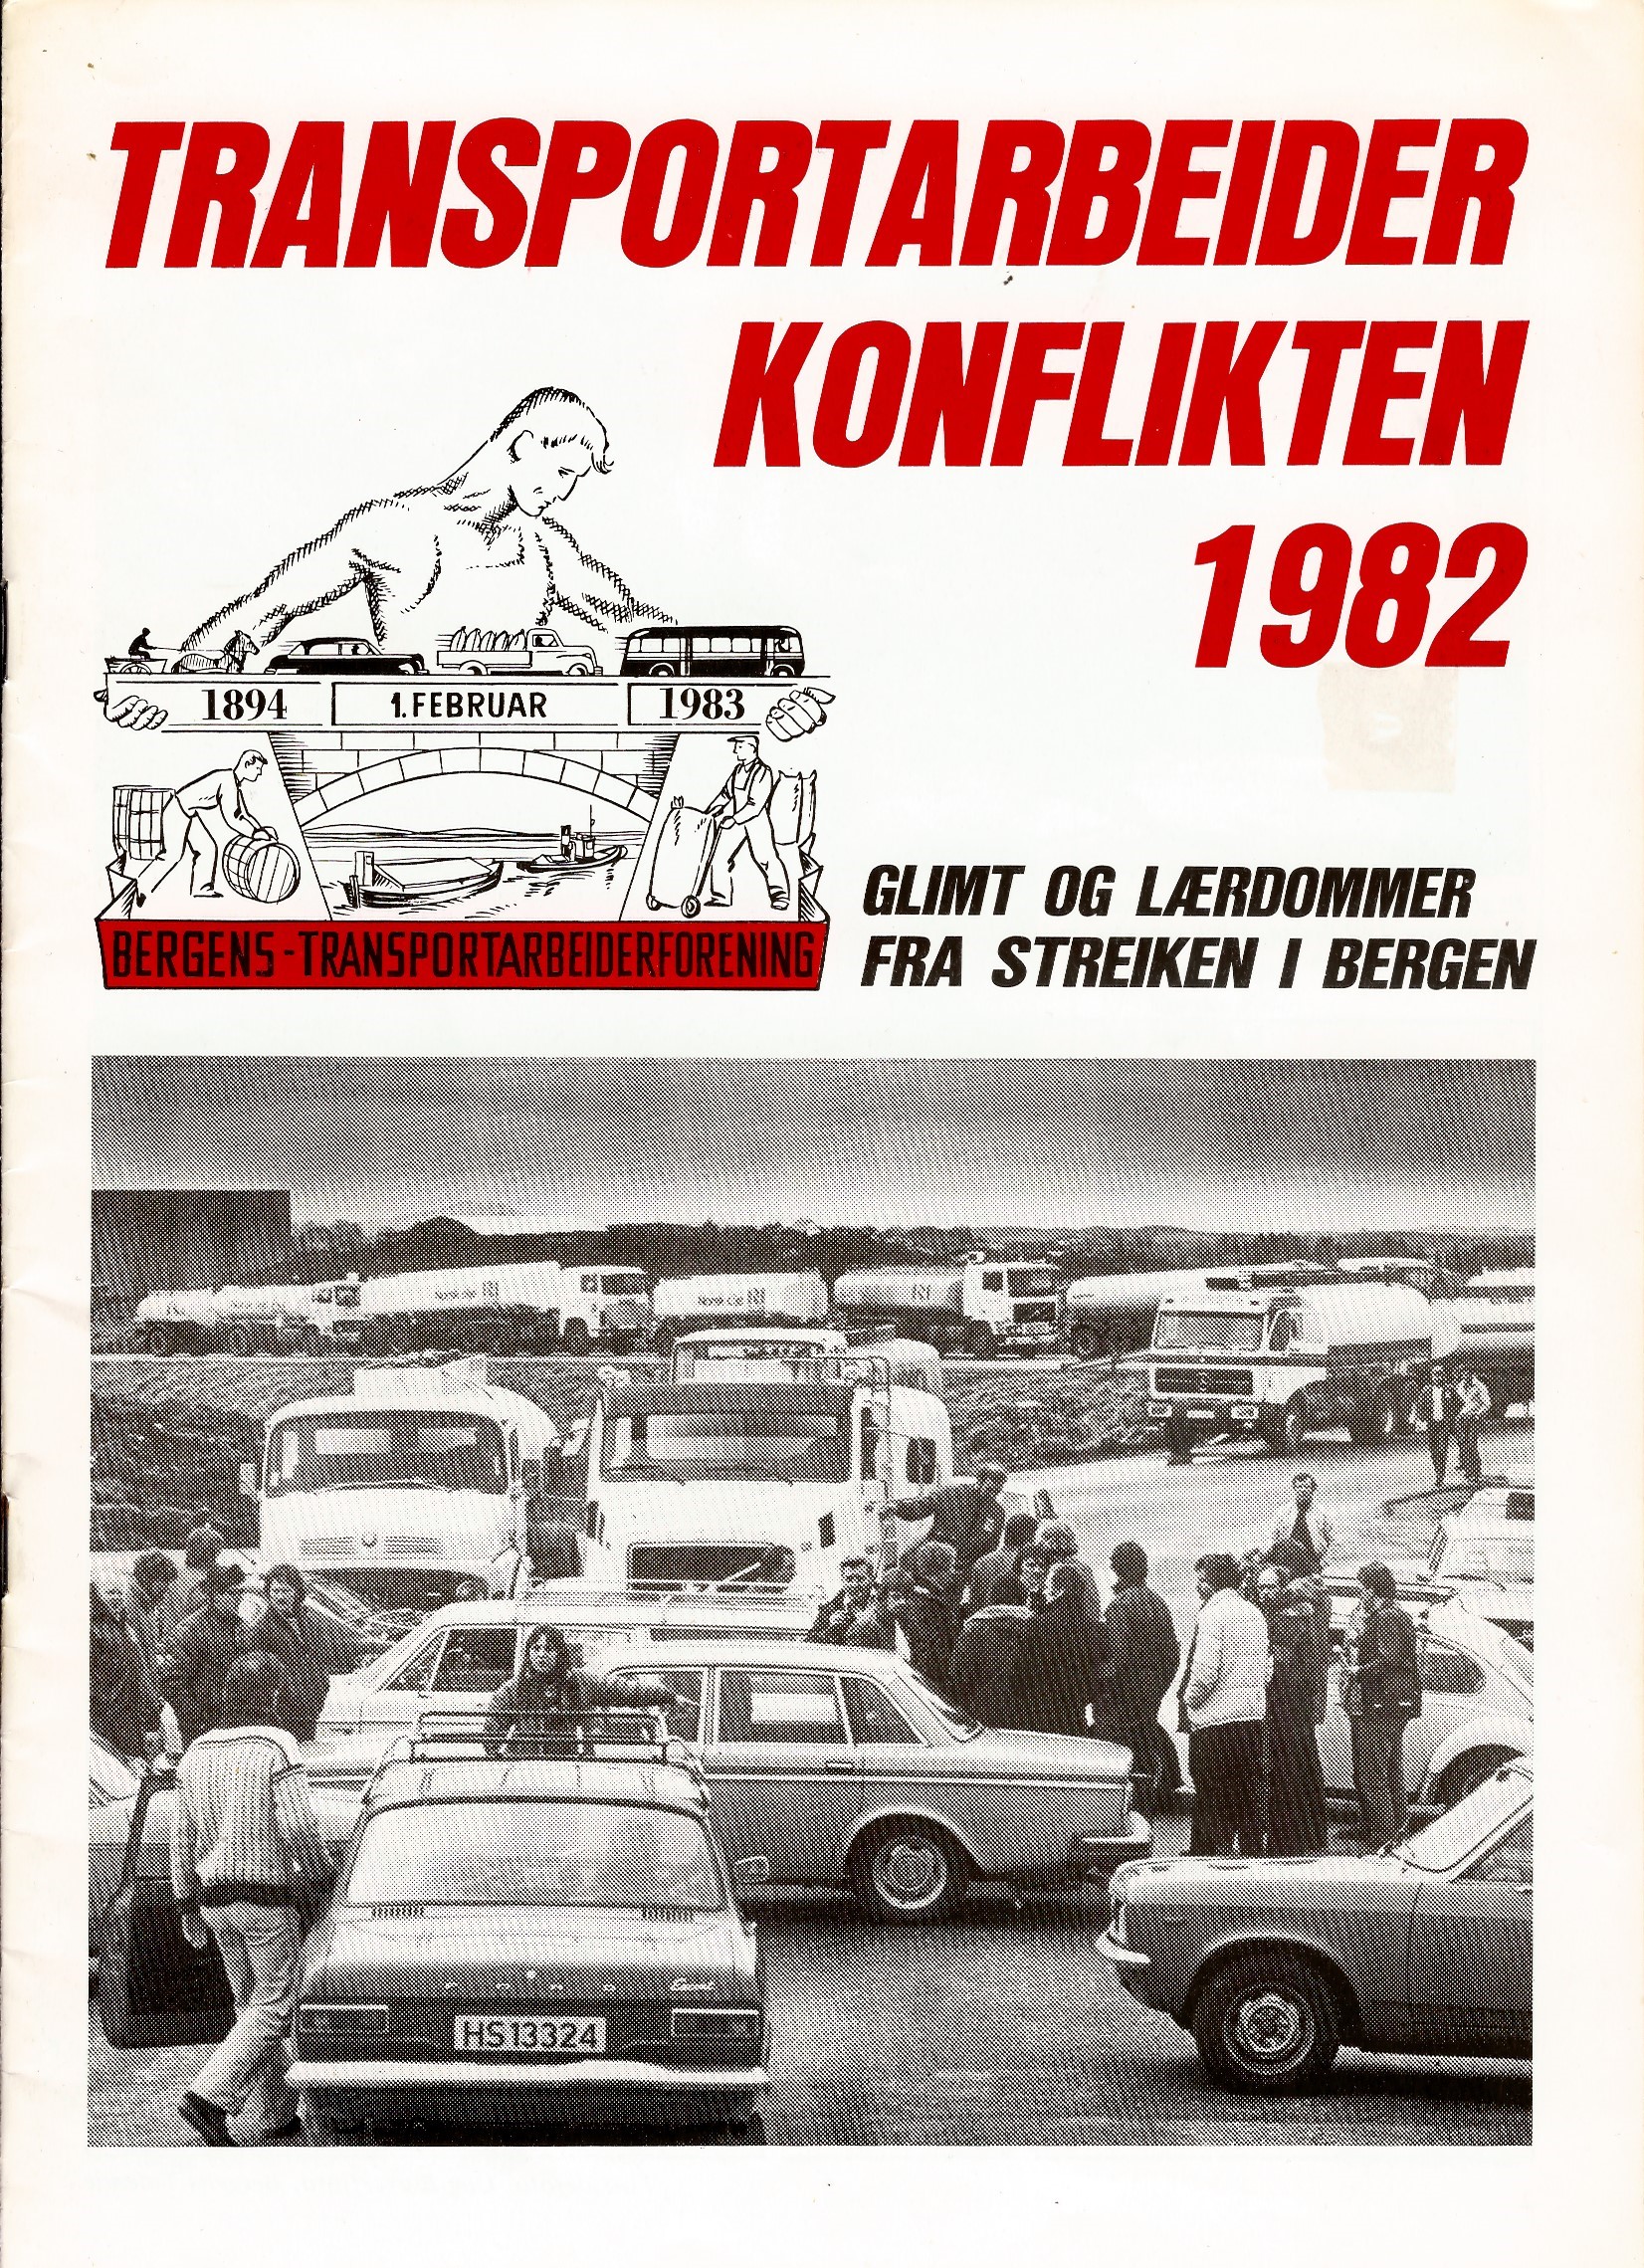 Transportarbeiderkonflikten 1982